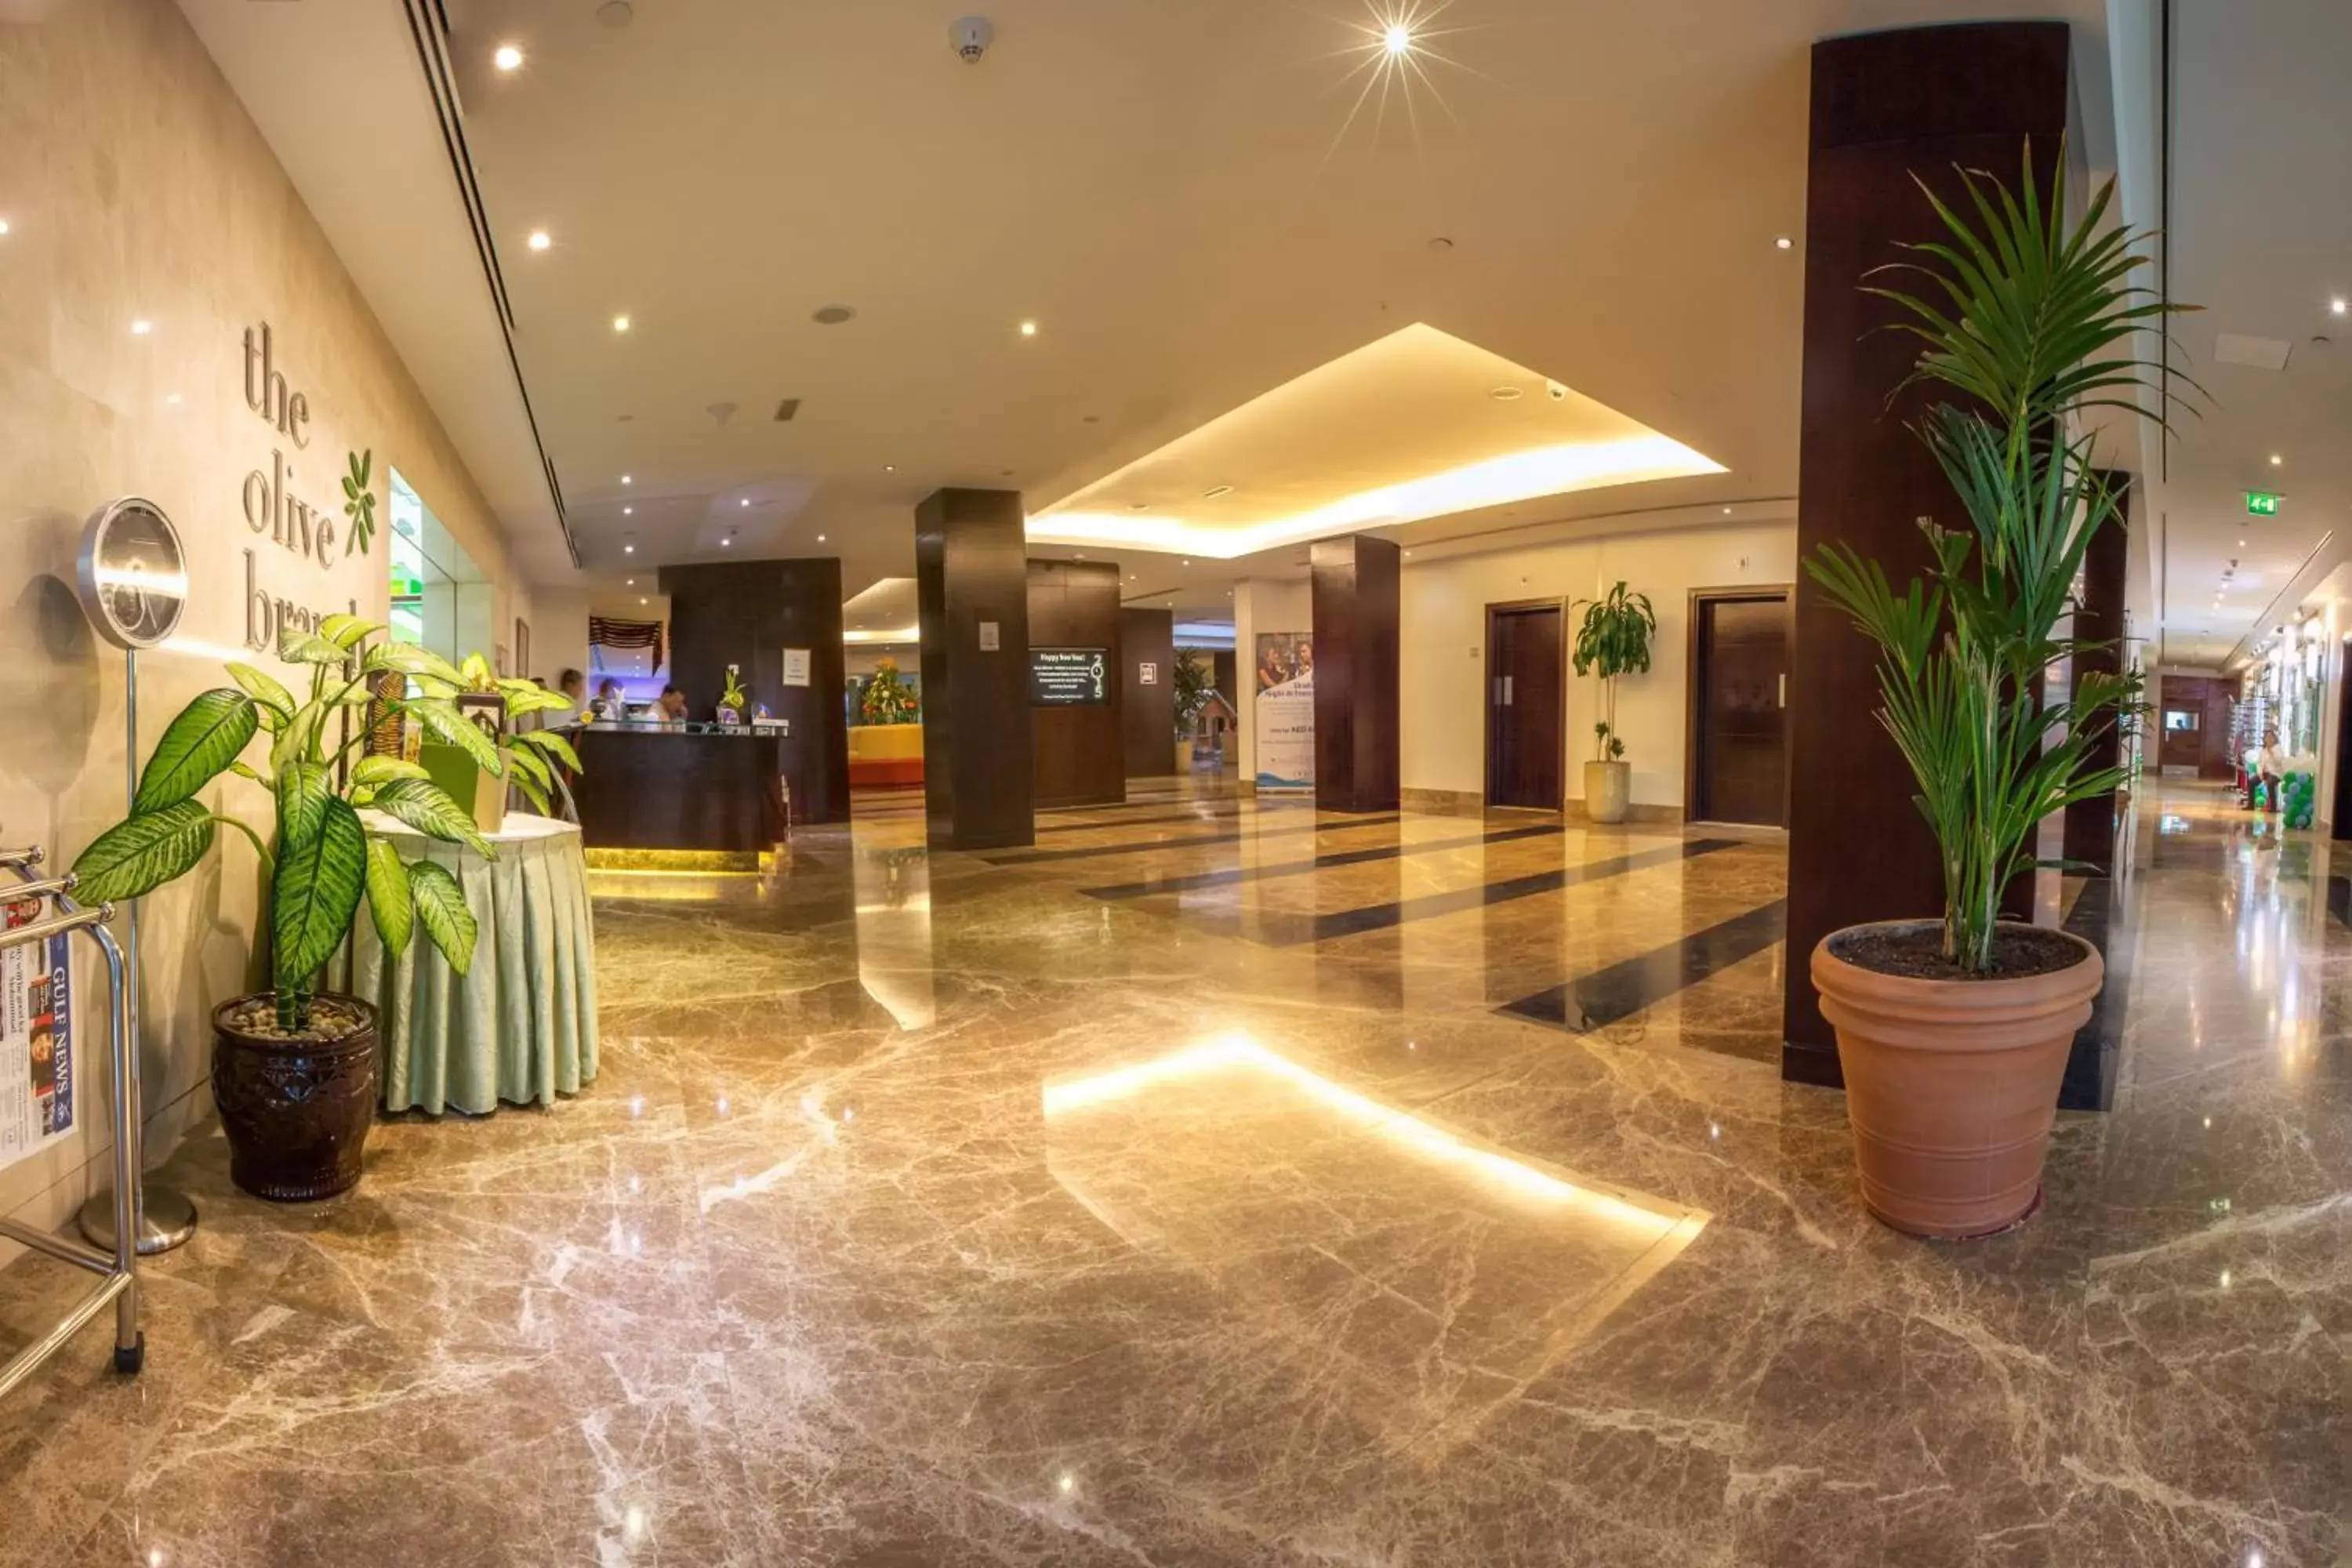 Lobby or reception, Lobby/Reception in Millennium Central Al Mafraq